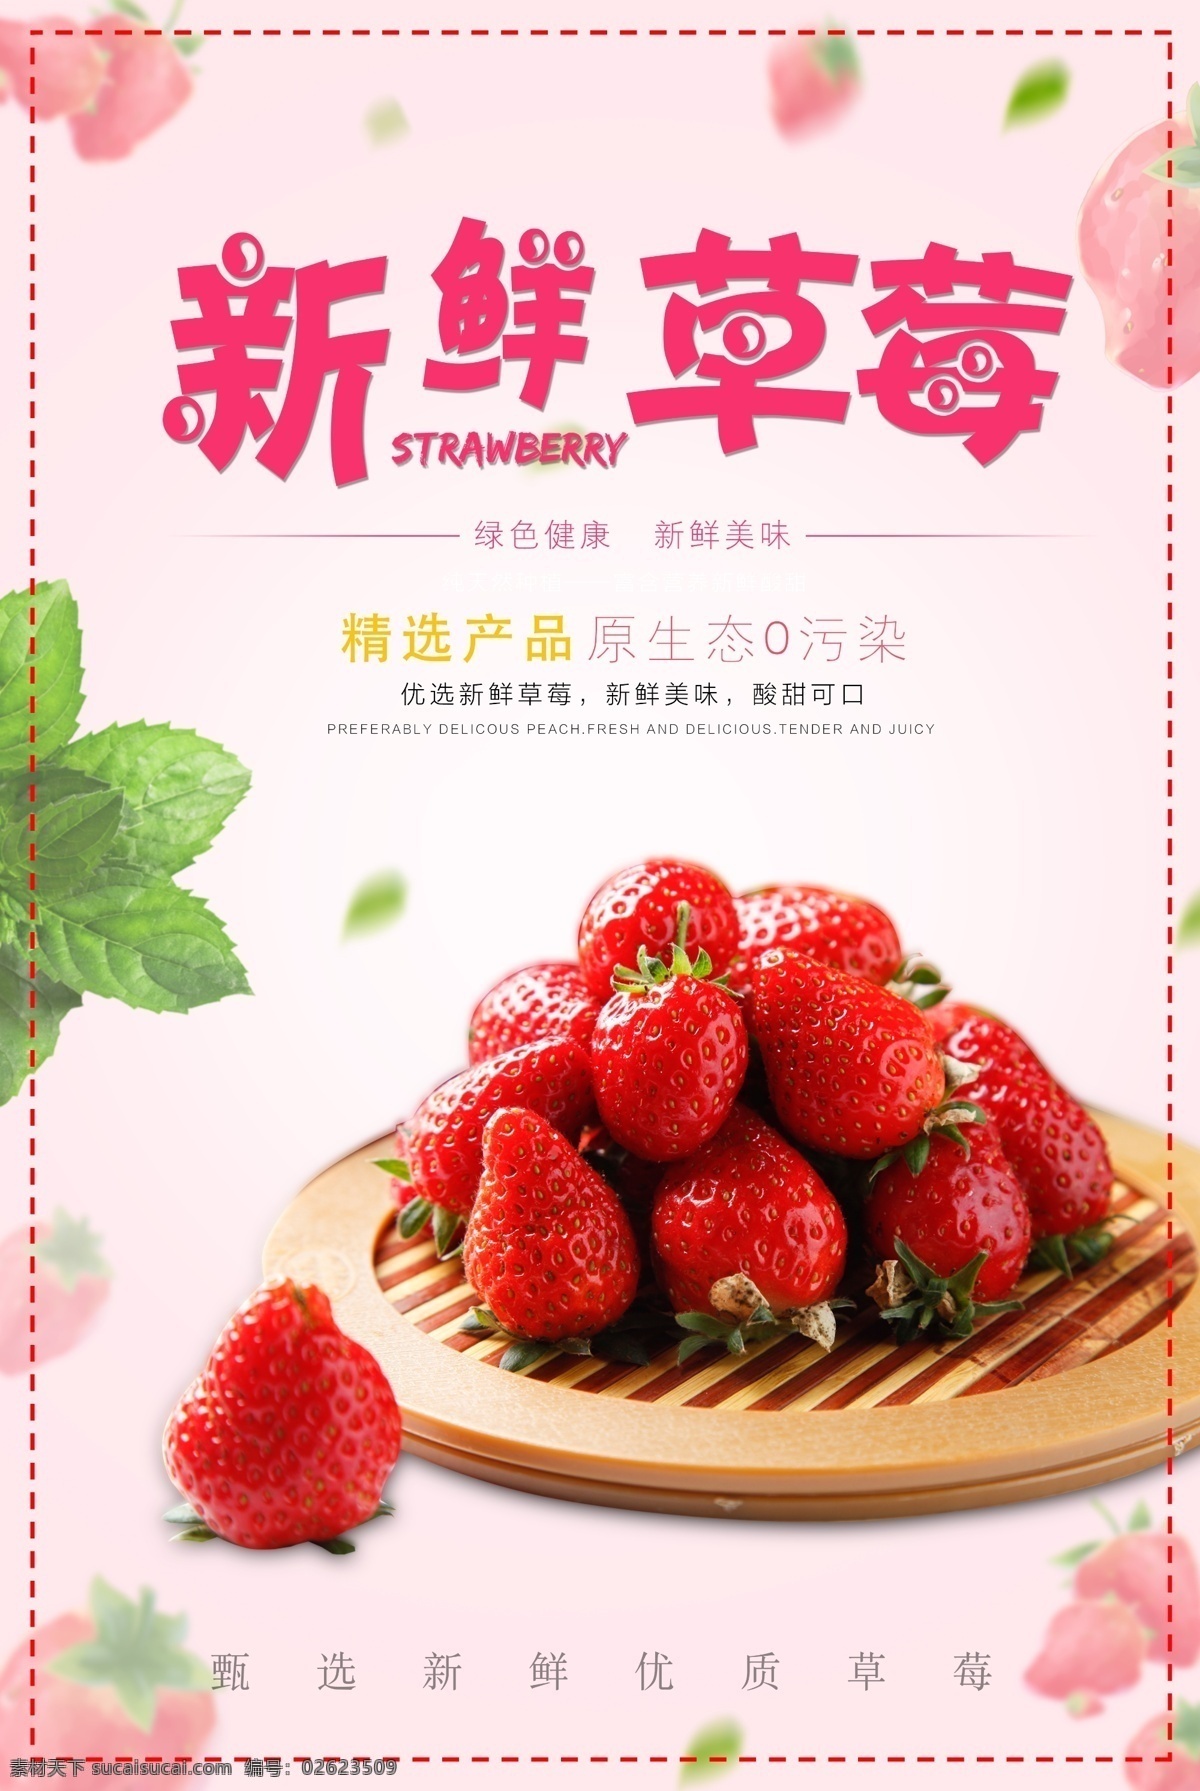 新鲜 草莓 水果 海报 采摘 可口草莓 水果海报 新鲜水果 天然可口 食物 绿色健康 优质 当季水果